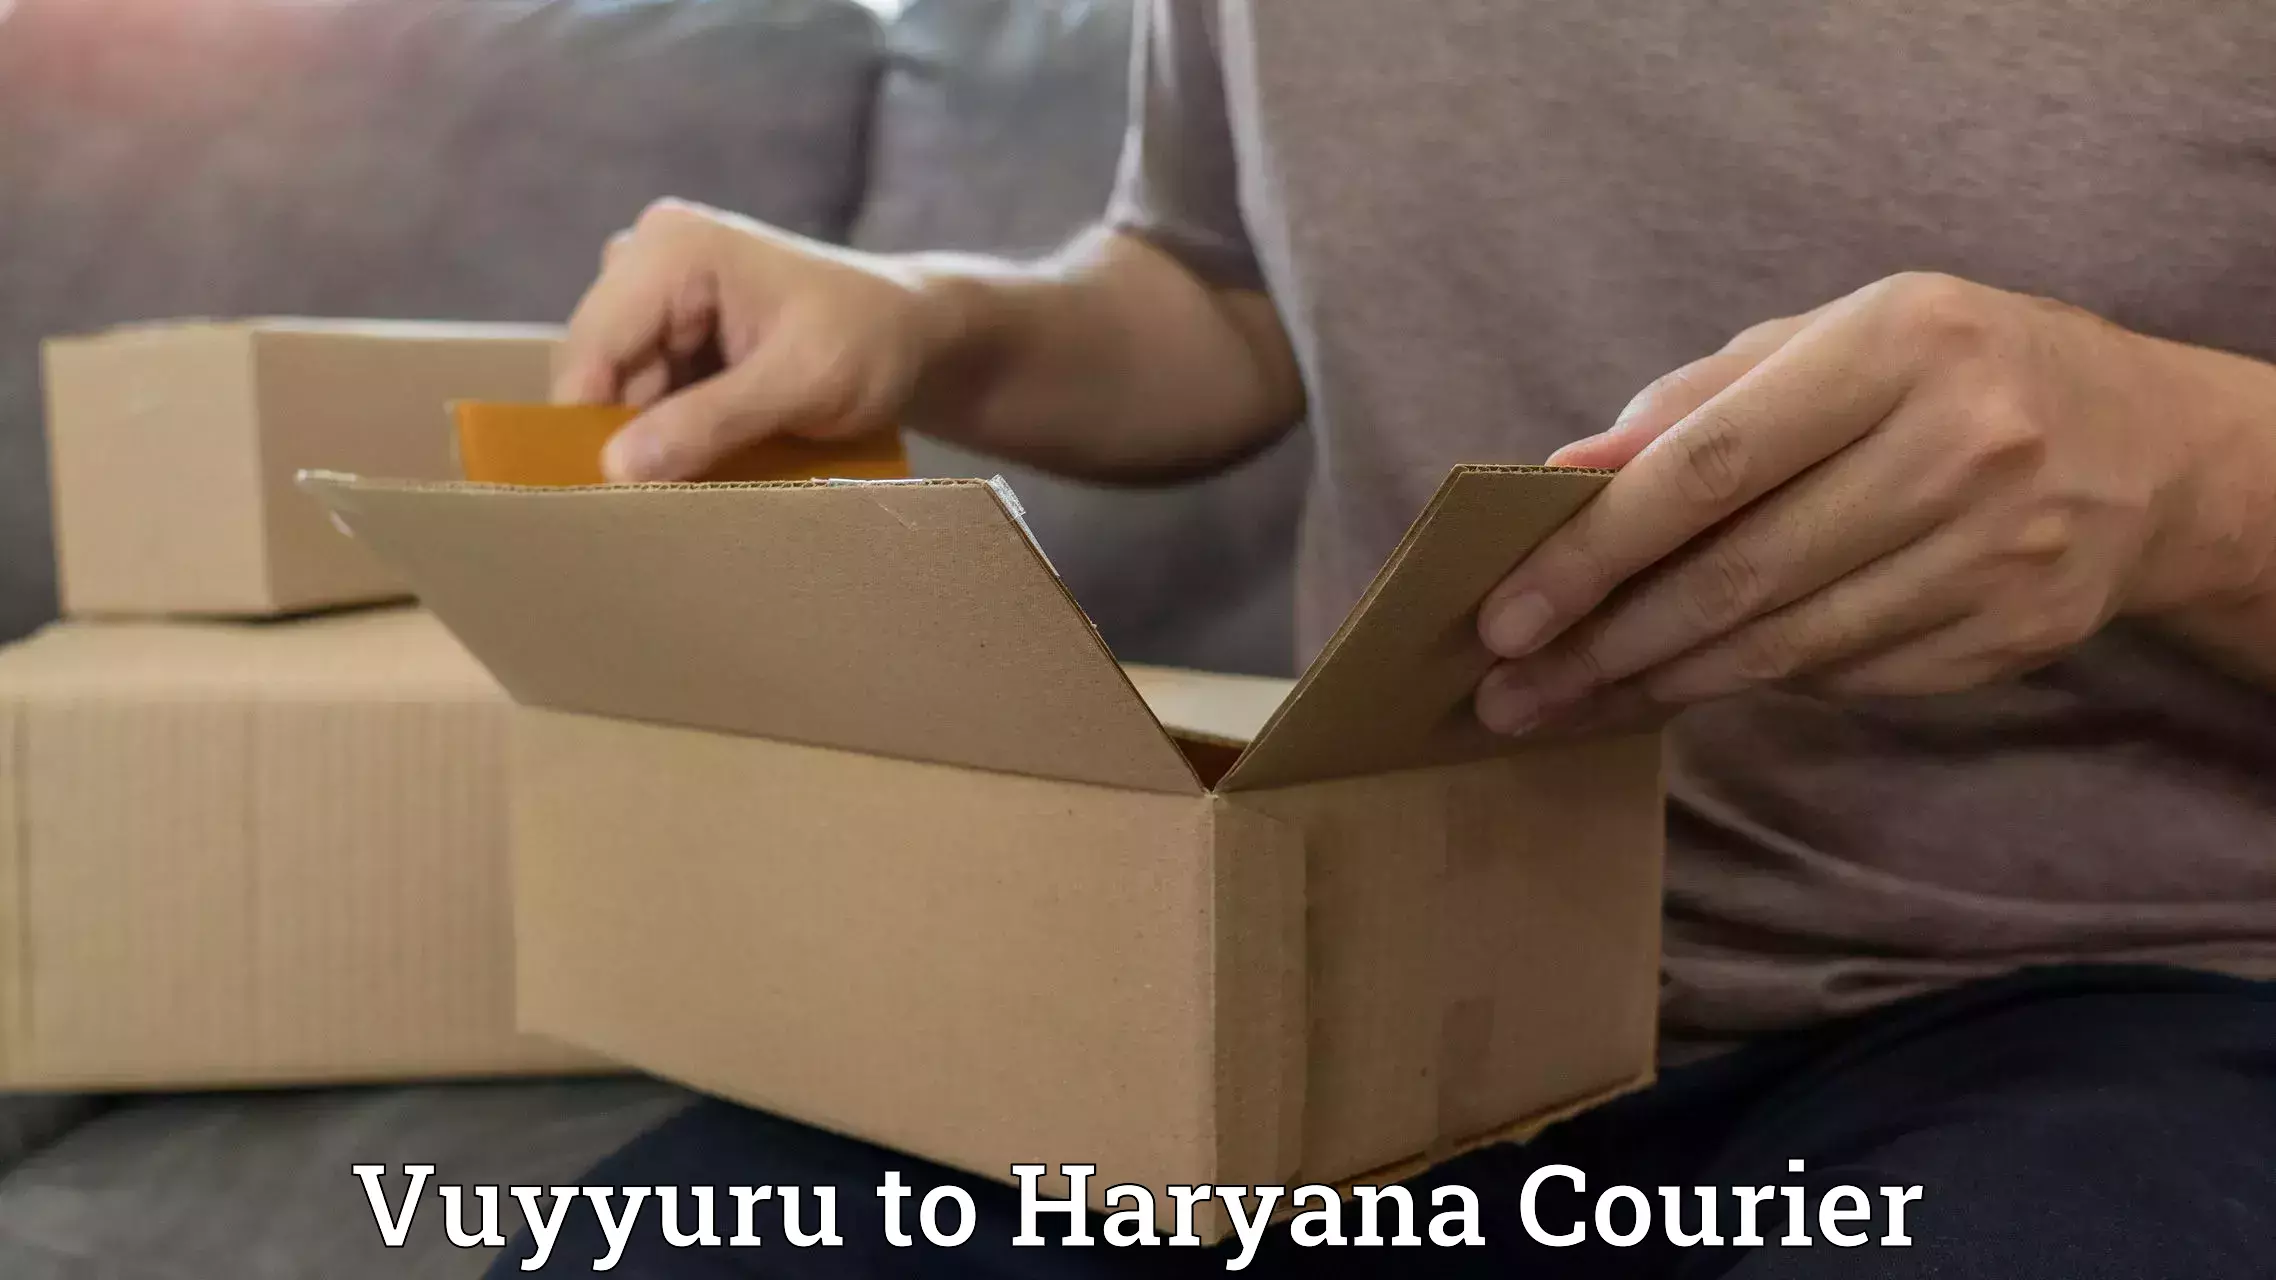 Tech-enabled shipping Vuyyuru to Gurugram